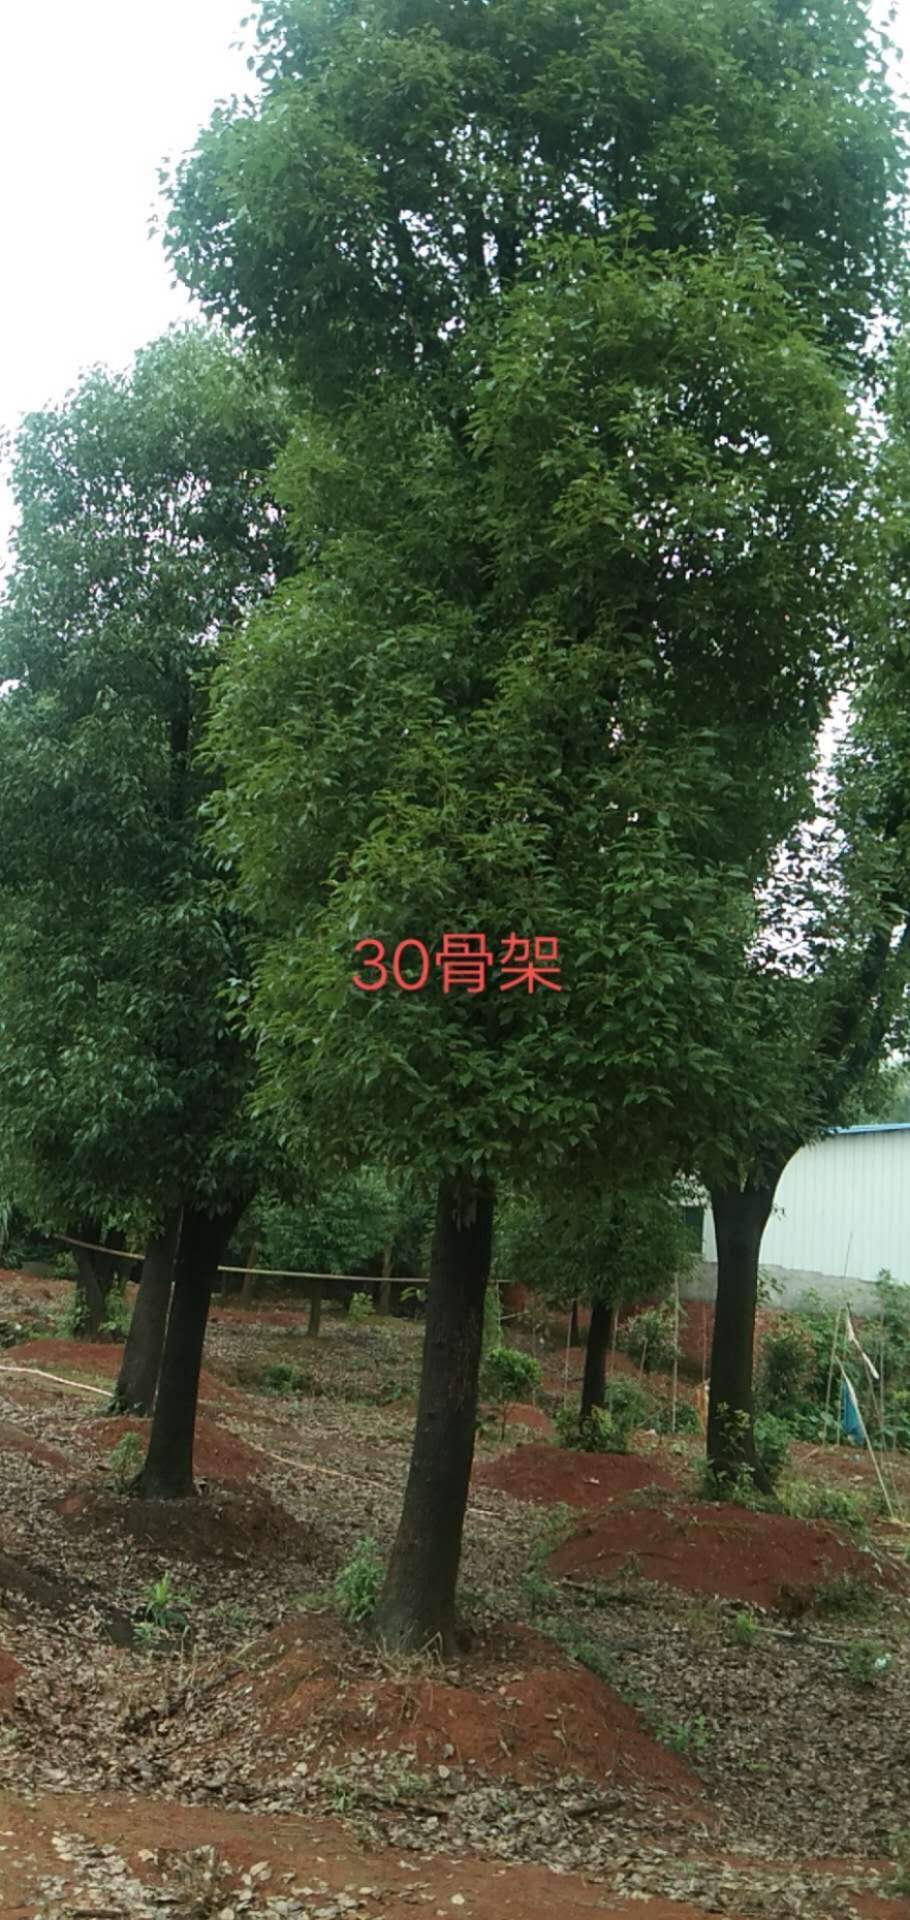 30骨架香樟树